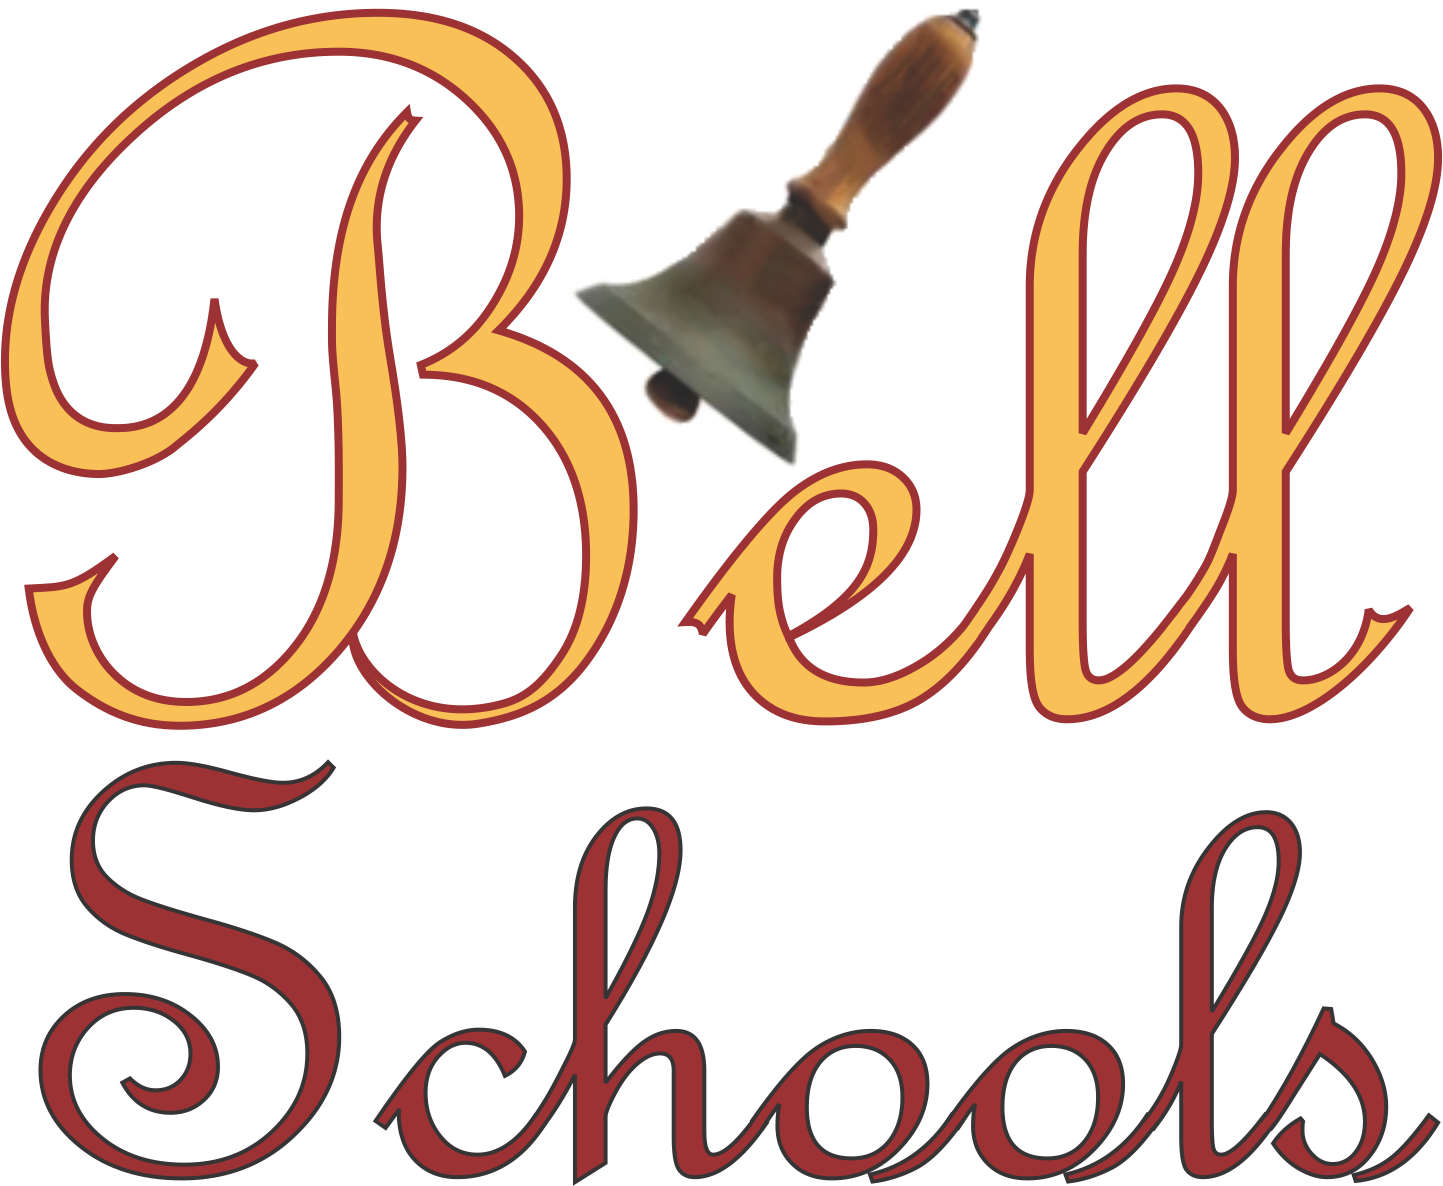 BellSchoolsLogo